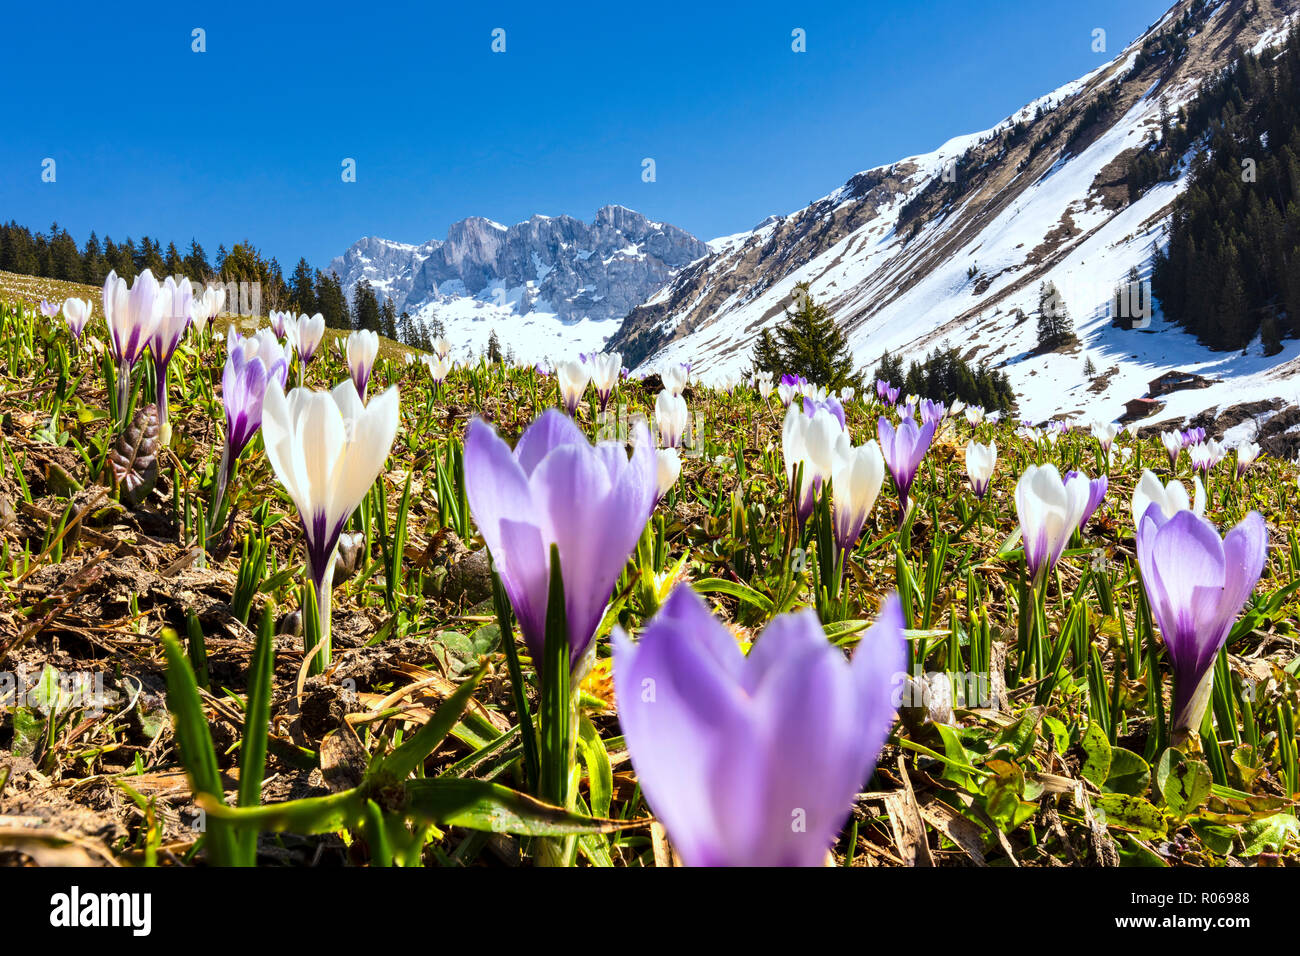 Close-up von crocus Blumen in voller Blüte, Partnun, Prattigau, Davos,  Kanton Graubünden, Schweiz, Europa Stockfotografie - Alamy